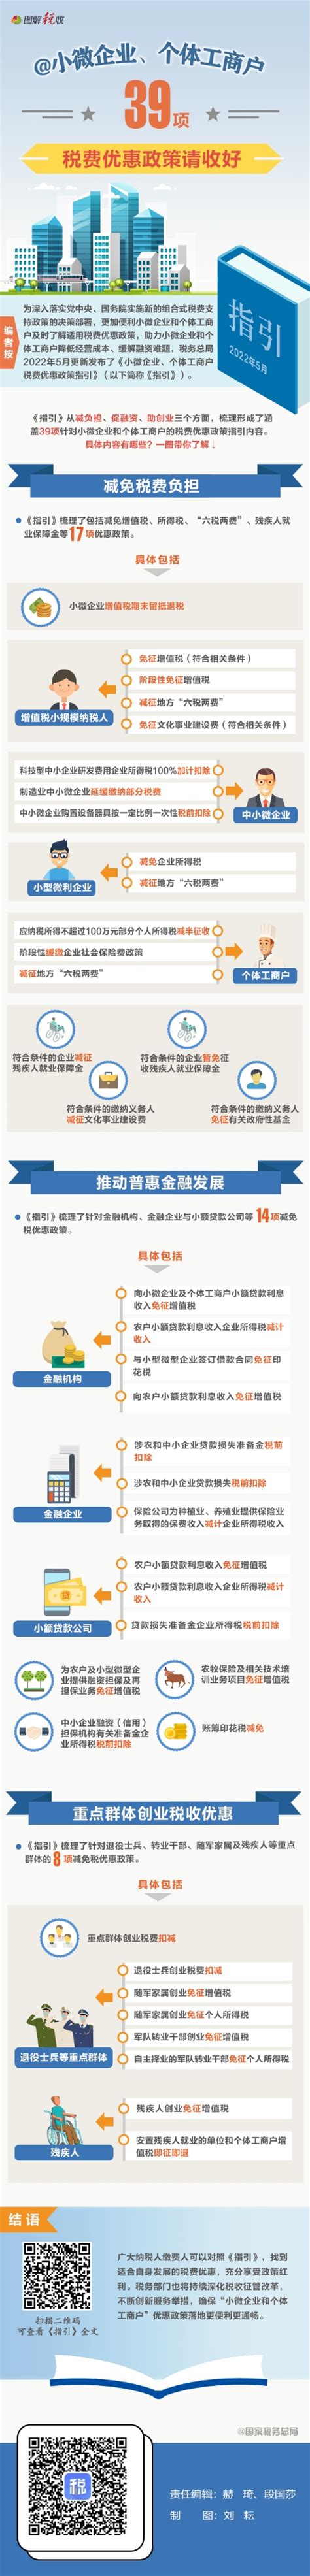 泰安旅游经济开发区 新闻宣传 @小微企业、个体工商户：39项税费优惠政策请收好